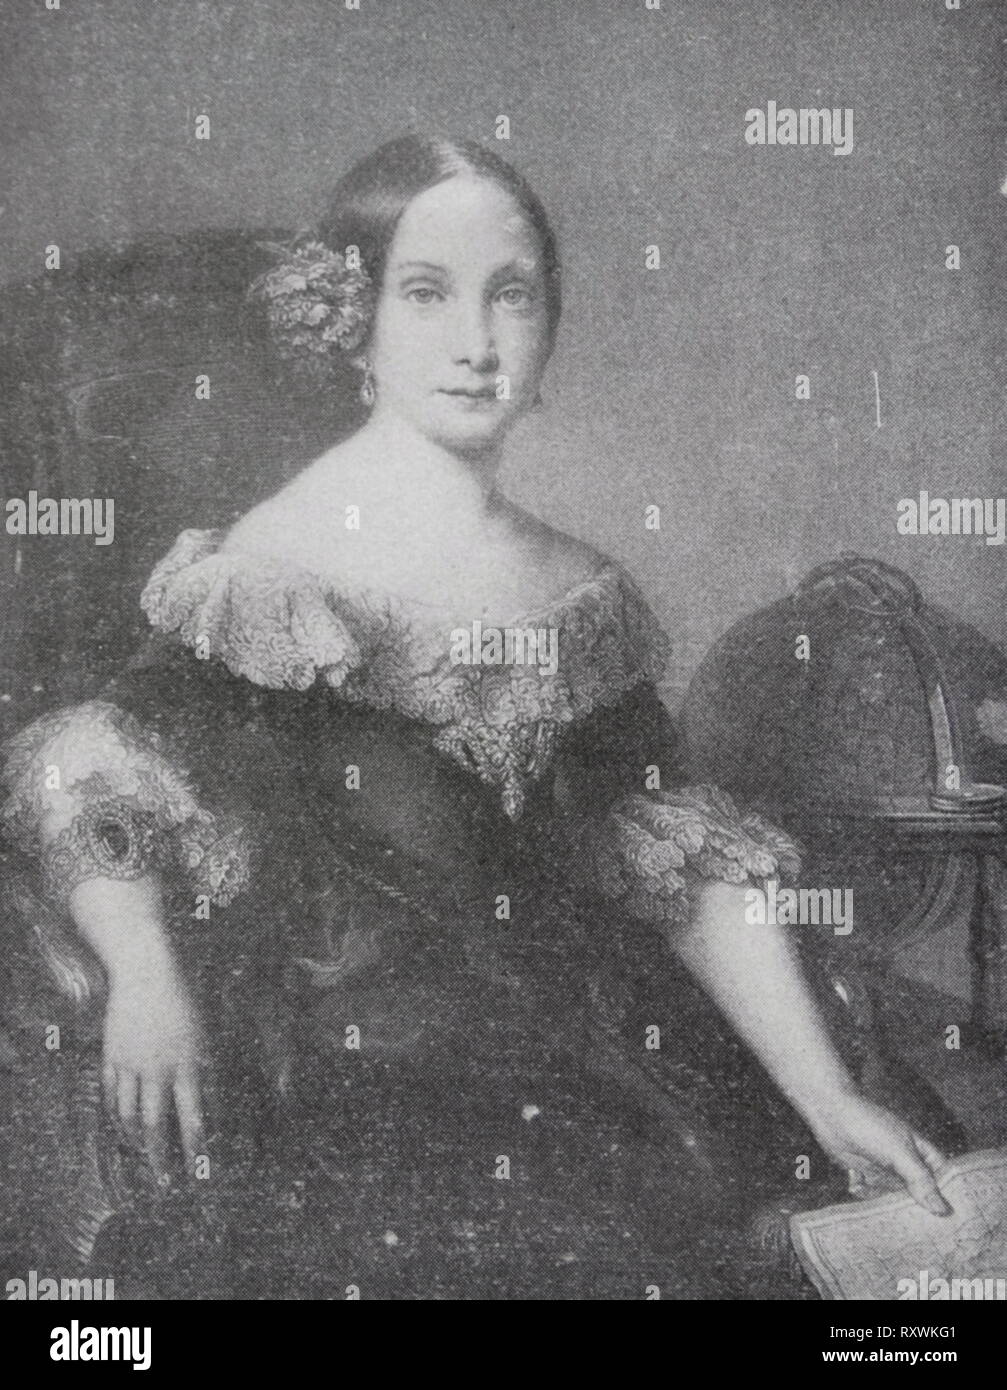 Isabel II in ihrer Jugend (1842). Seine Mehrheit hatte nicht verkündet wurde. Portrait von Vicente Lopez. Isabella II (1830-1904), Königin von Spanien von 1833 bis 1868. Sie kam auf den Thron als Säugling, aber ihre Nachfolge wurde von der Carlists, deren Verweigerung zu Erkennen einer weiblichen souverän führte zu der Karlistenkriege bestritten. Nach einer unruhigen Herrschaft, wurde sie in der Glorious Revolution von 1868 abgesetzt, und formell im Jahre 1870 abgedankt. Ihr Sohn, Alfonso XII, wurde König 1874 Stockfoto